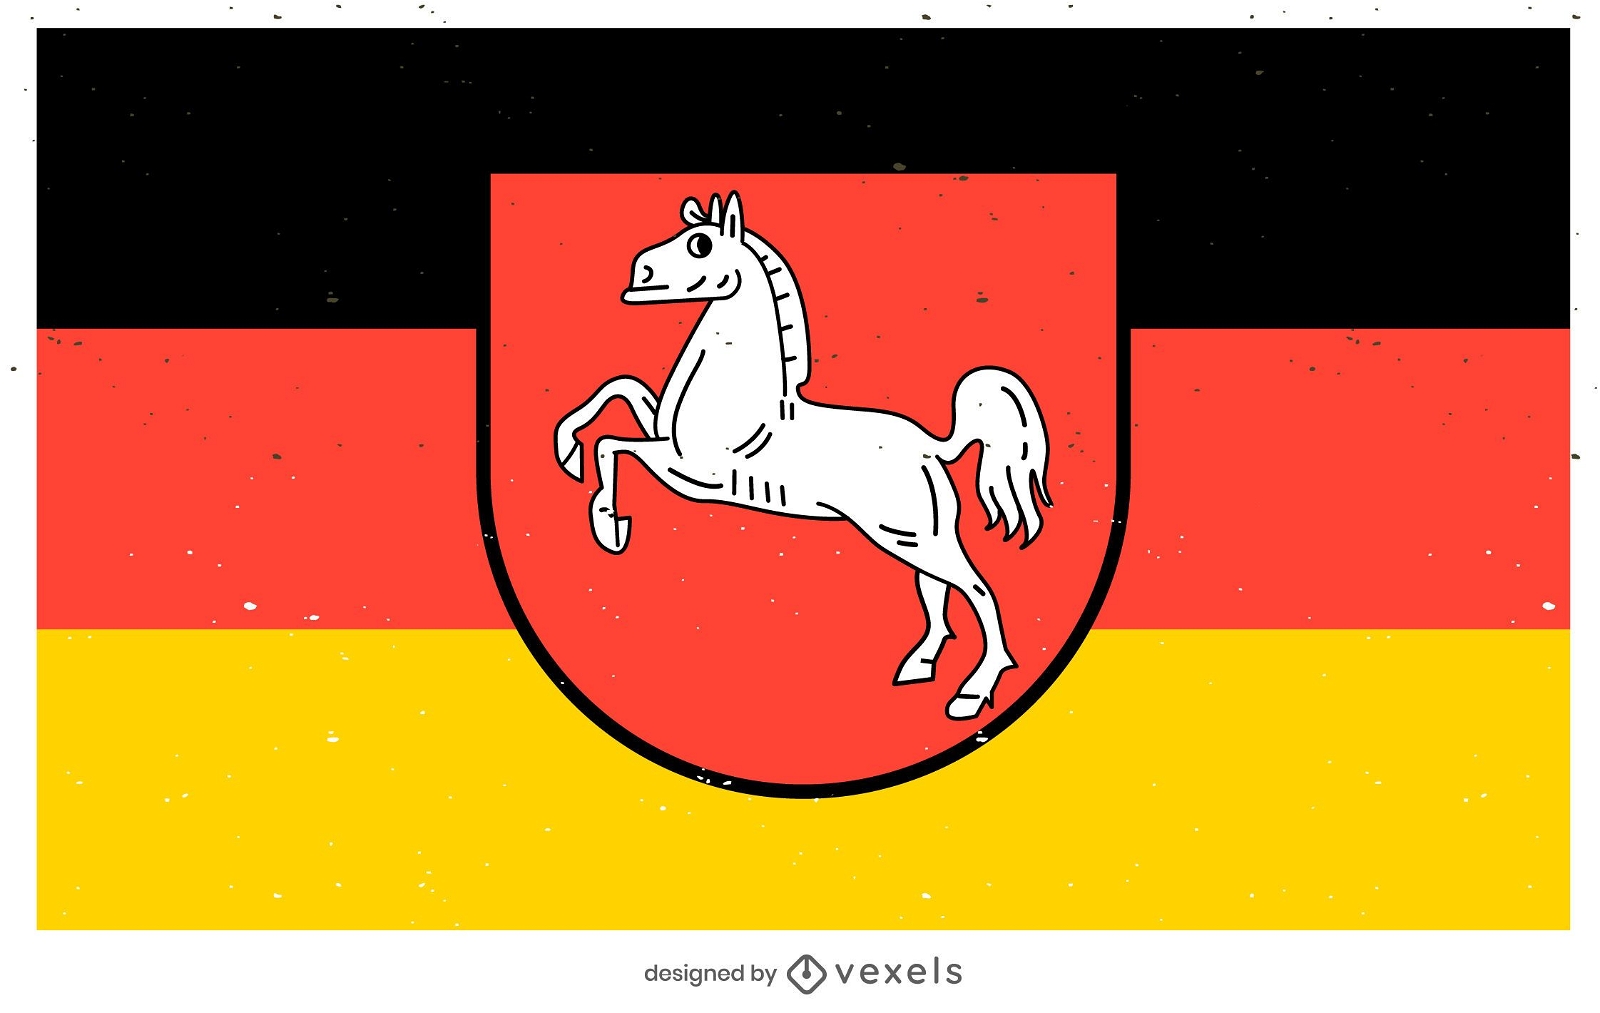 Dise?o de la bandera del estado de Niedersachsen